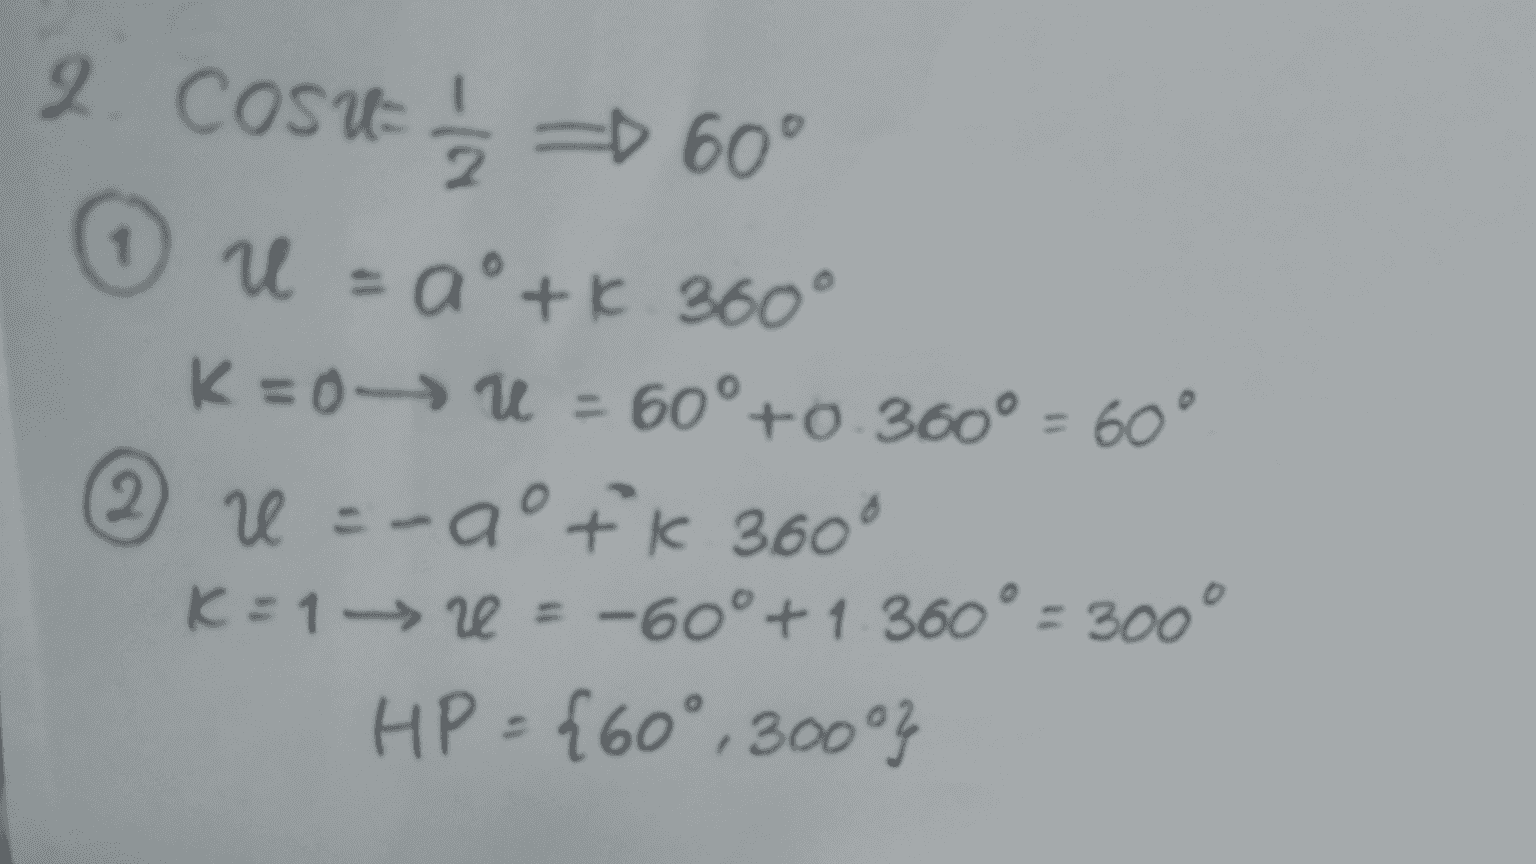 1 2. COSU = = 60° U = a +K 360° K=0->U = 60° +0.360° = 60° 2 v-aºK 360° K = 1 -> r = -60° +1 360° = 300° HP ={60°, 300°} 